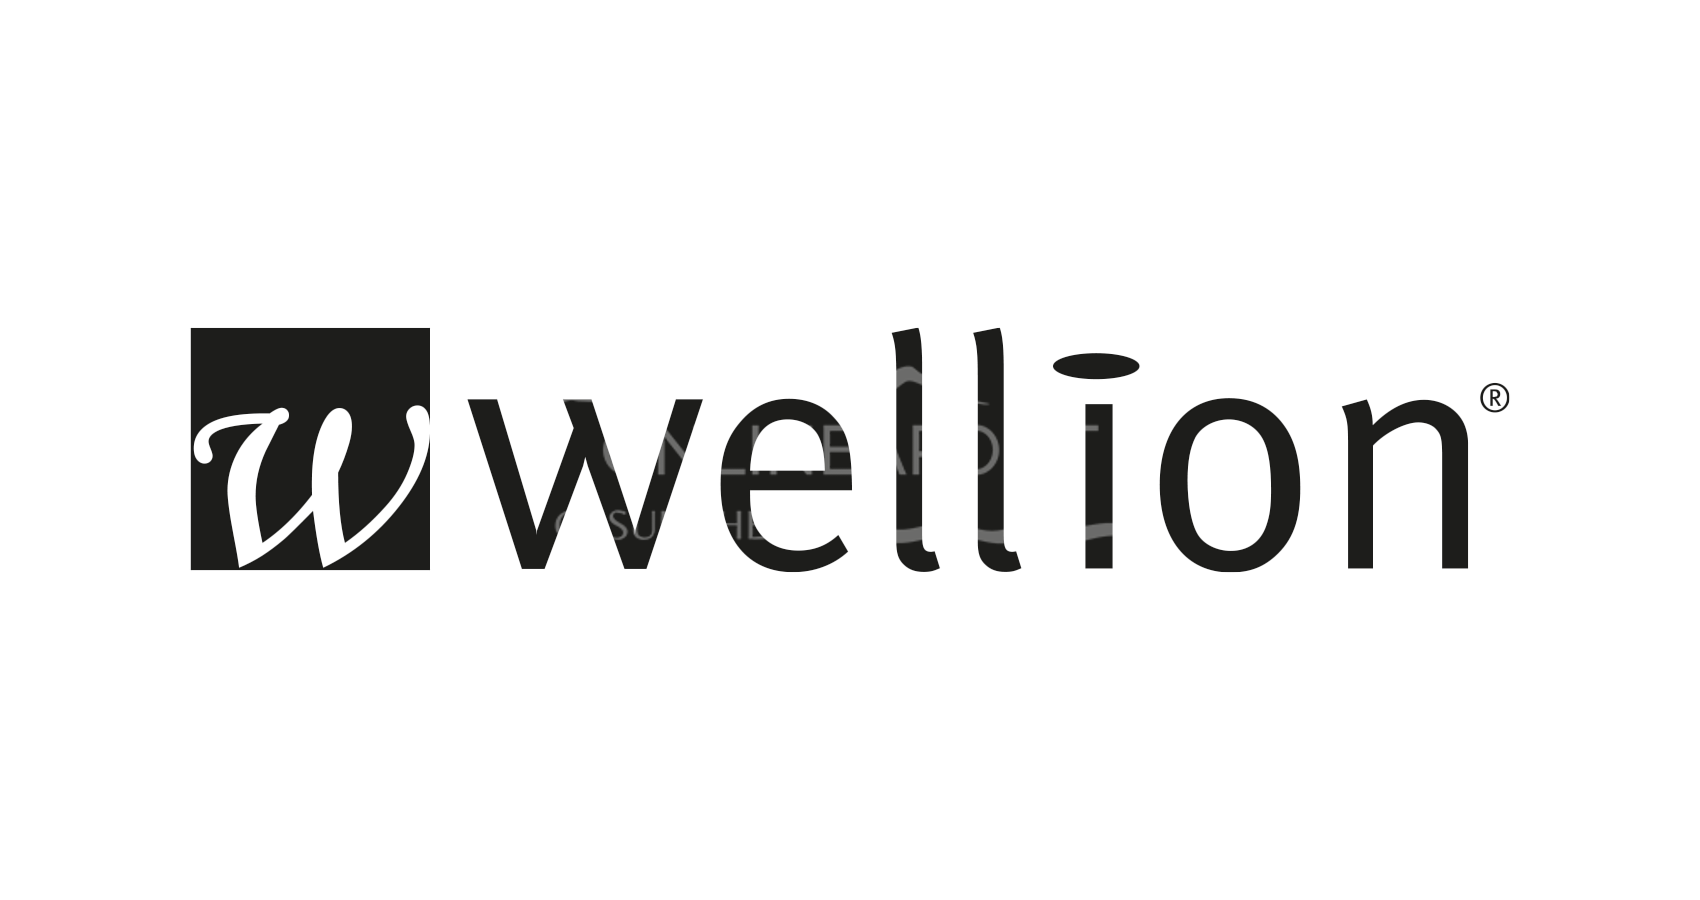 WELL23-18 Wellion MEDFINE Aufziehkanüle 18G x 1/2“, 1,20 x 40 mm